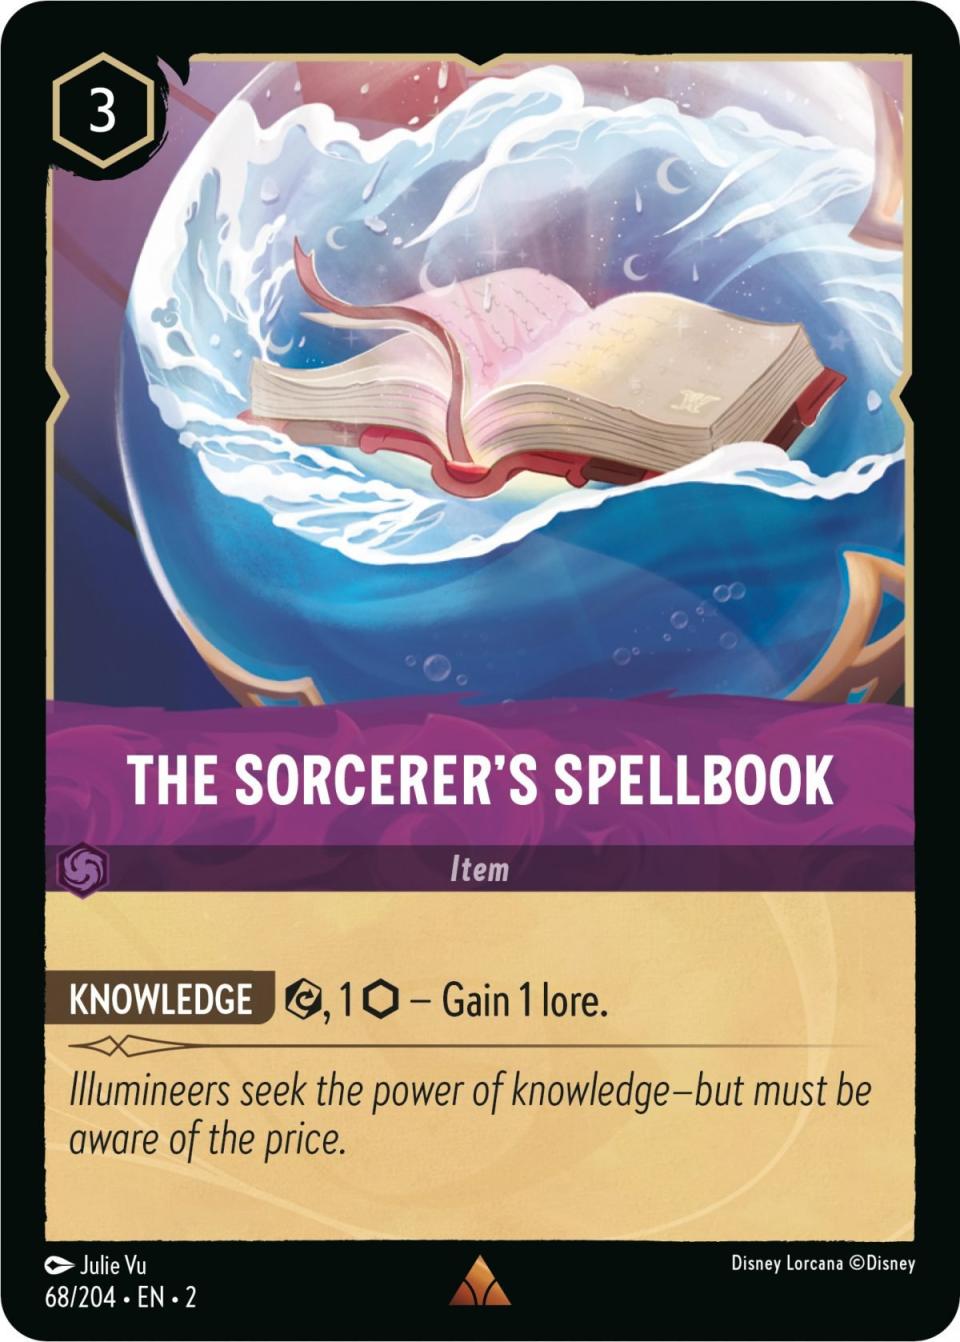 The Sorcerer's Spellbook card